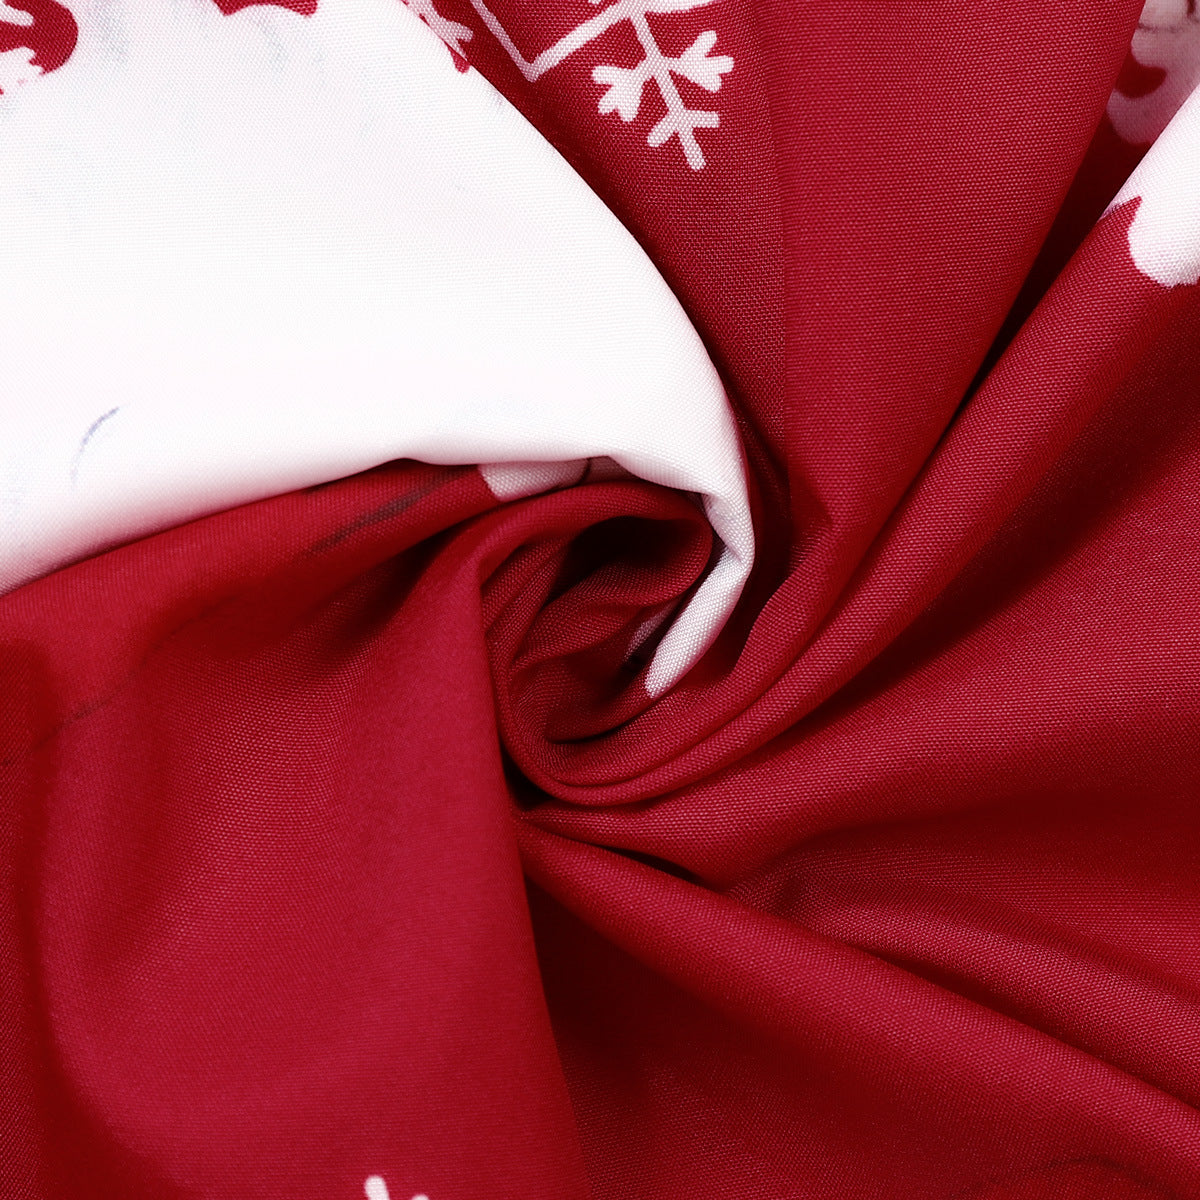 فستان دانتيل بخياطة متباينة من الدانتيل بتصميم عصري في عيد الميلاد